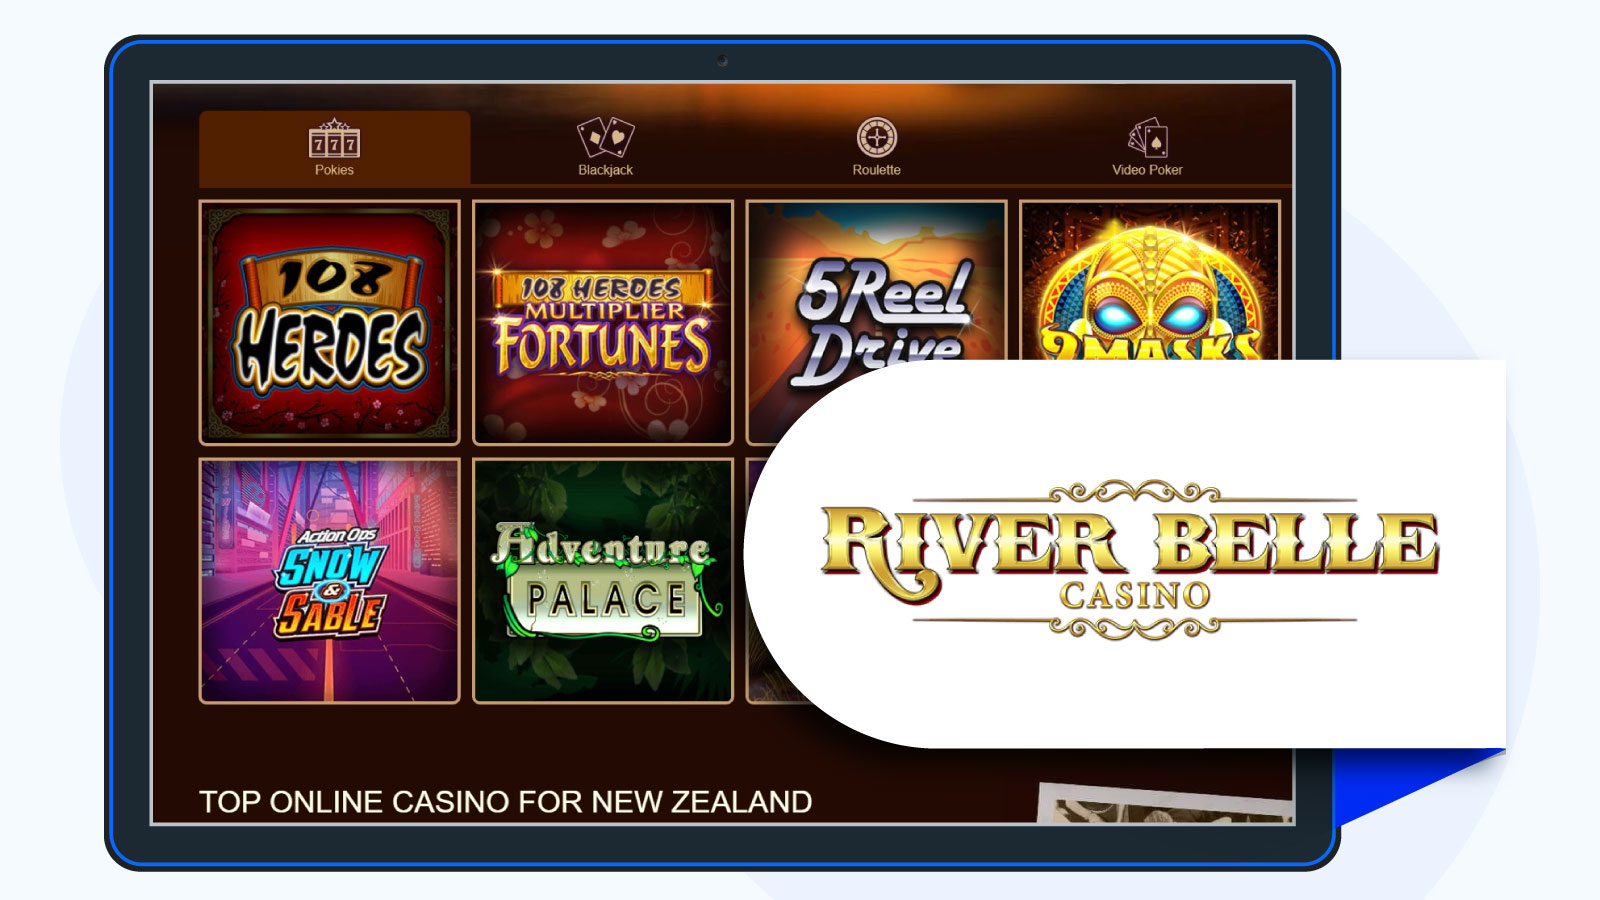 River-Belle-Casino lobby